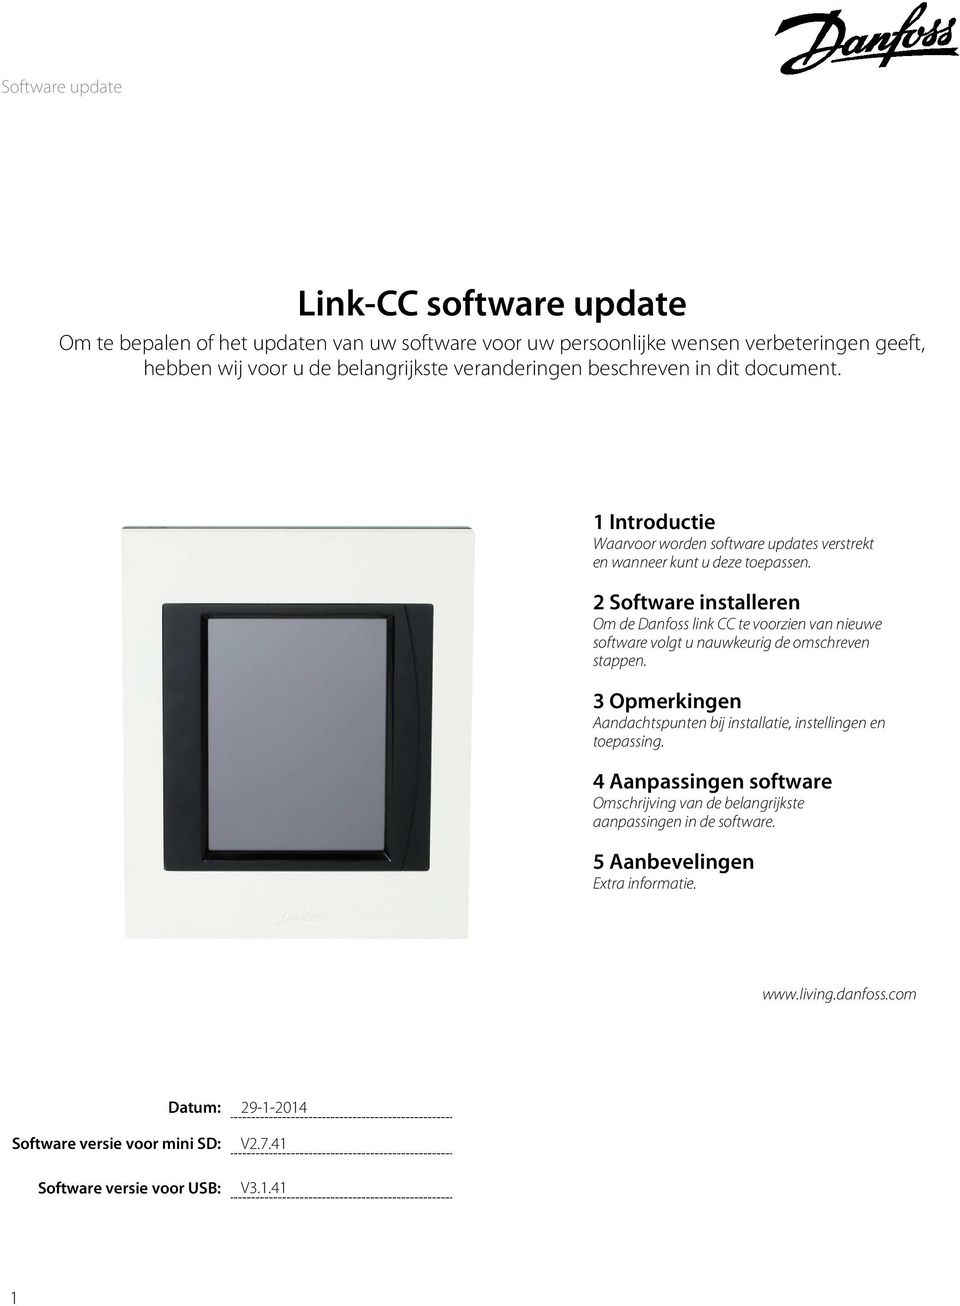 2 Software installeren Om de Danfoss link CC te voorzien van nieuwe software volgt u nauwkeurig de omschreven stappen.